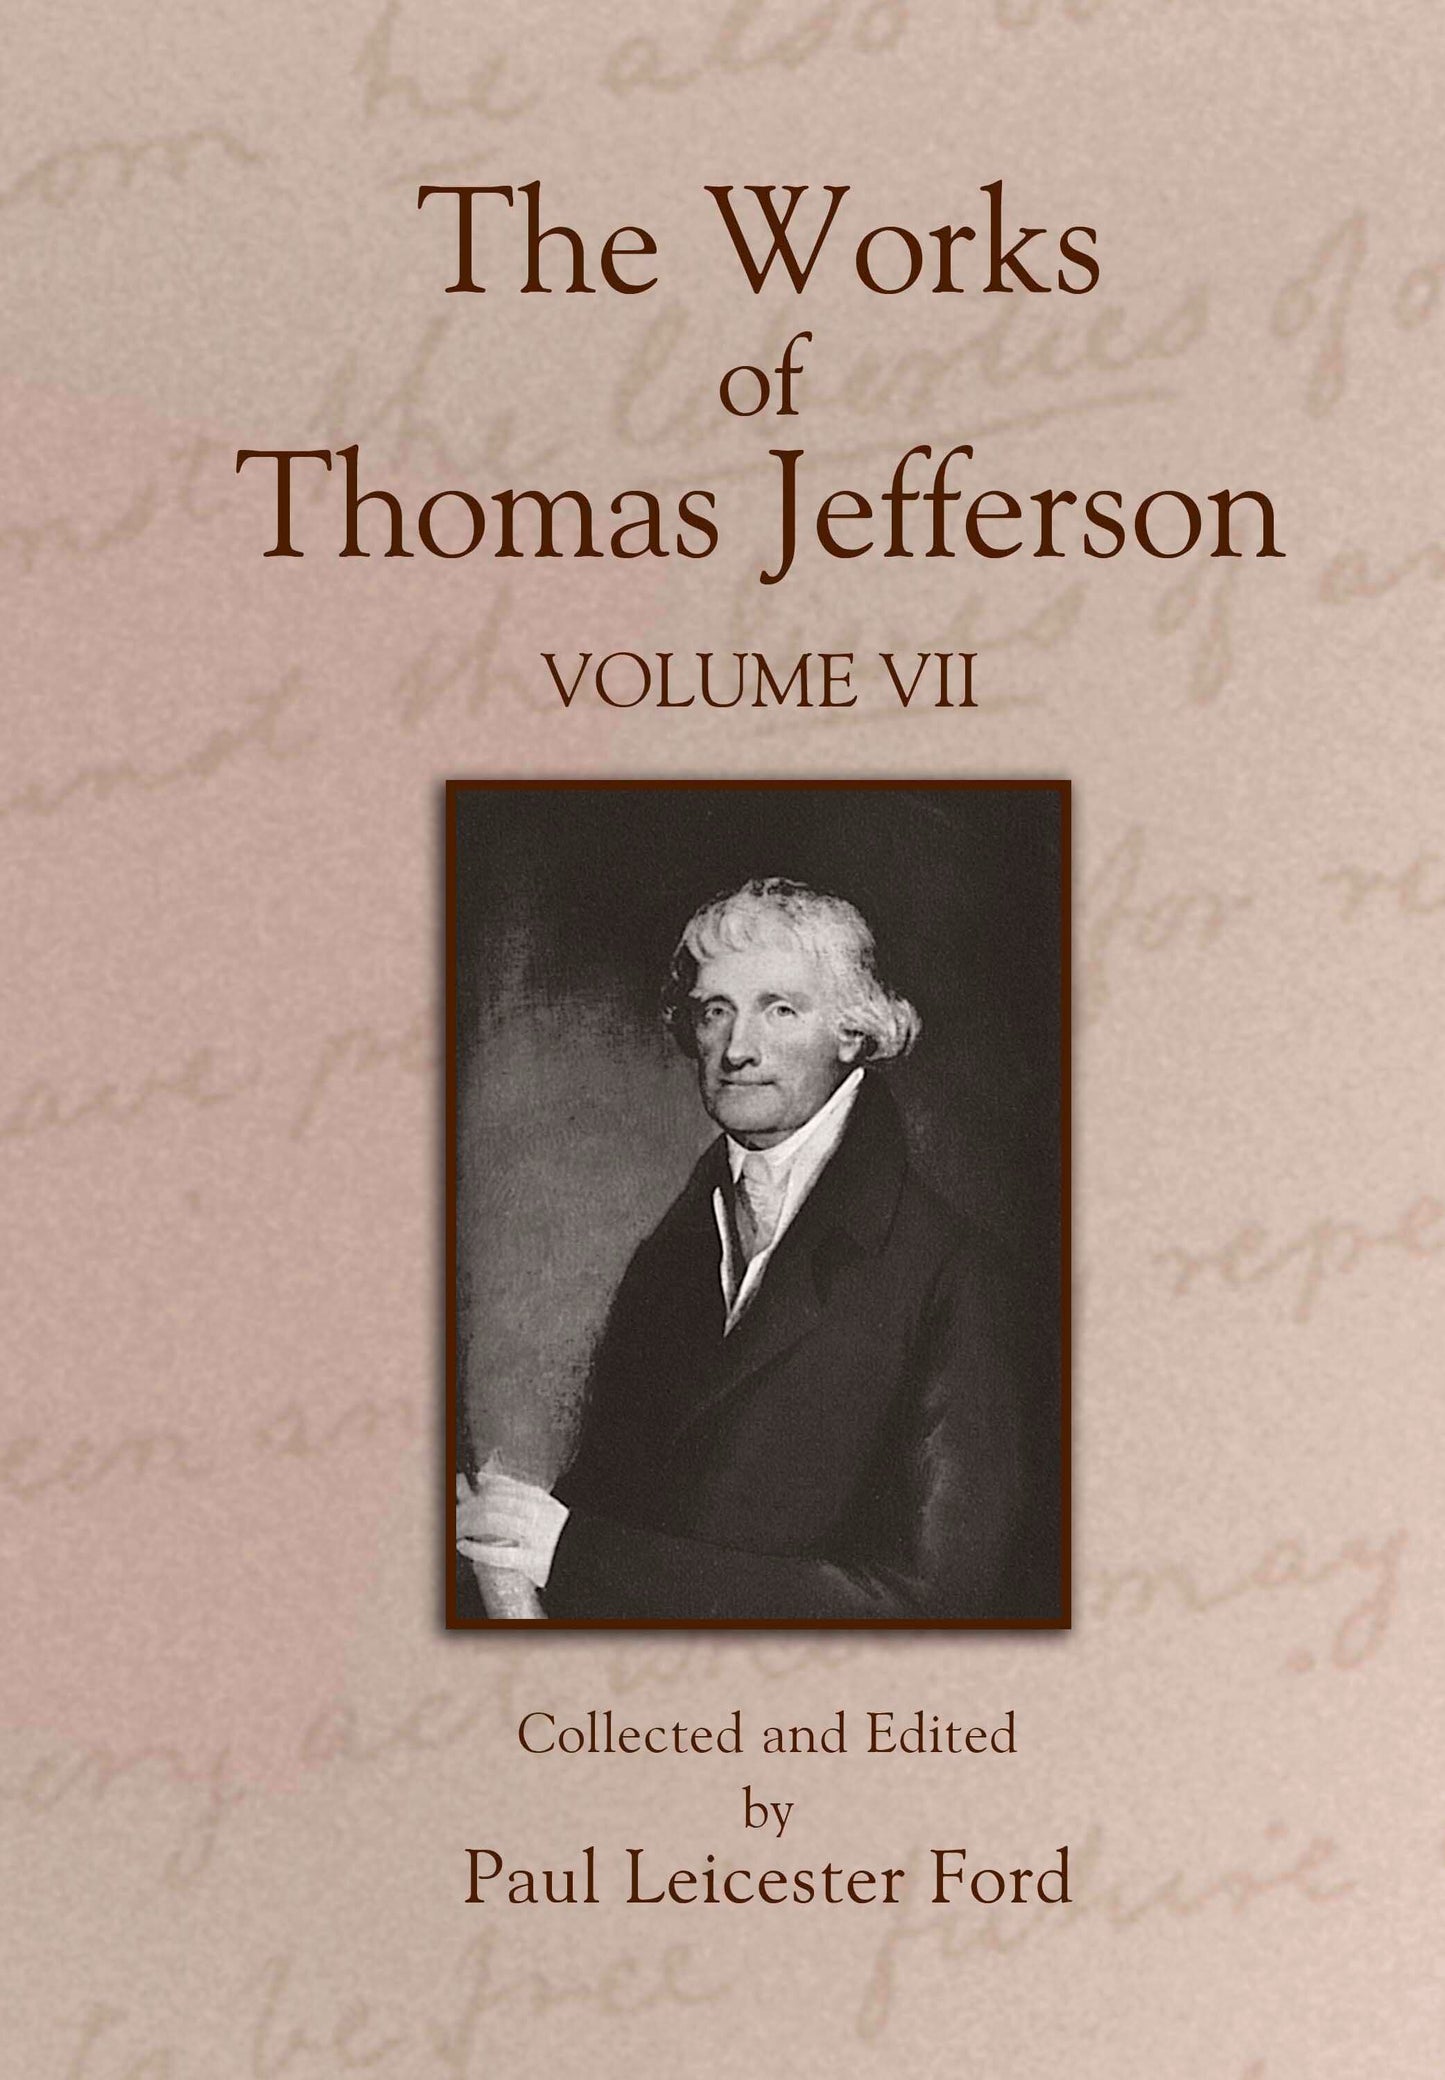 The Works of Thomas Jefferson: Volume VII